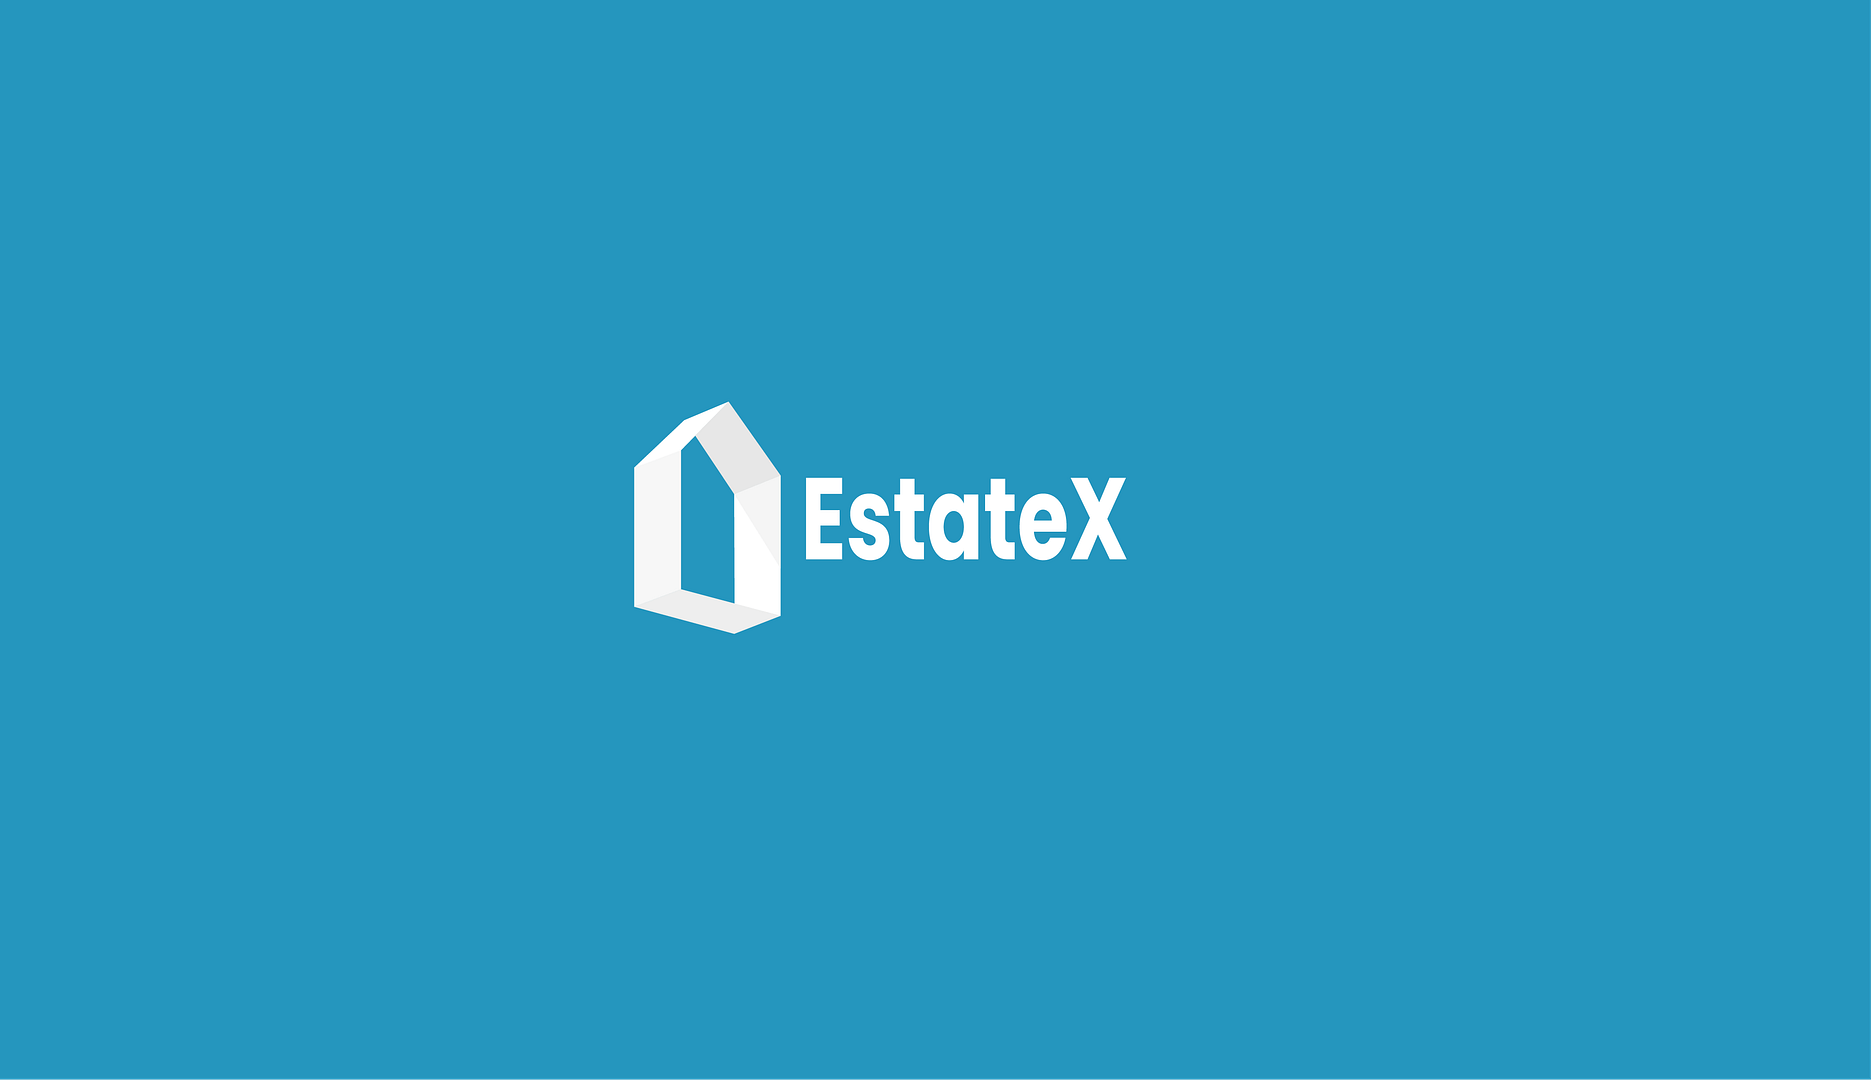 EstateX